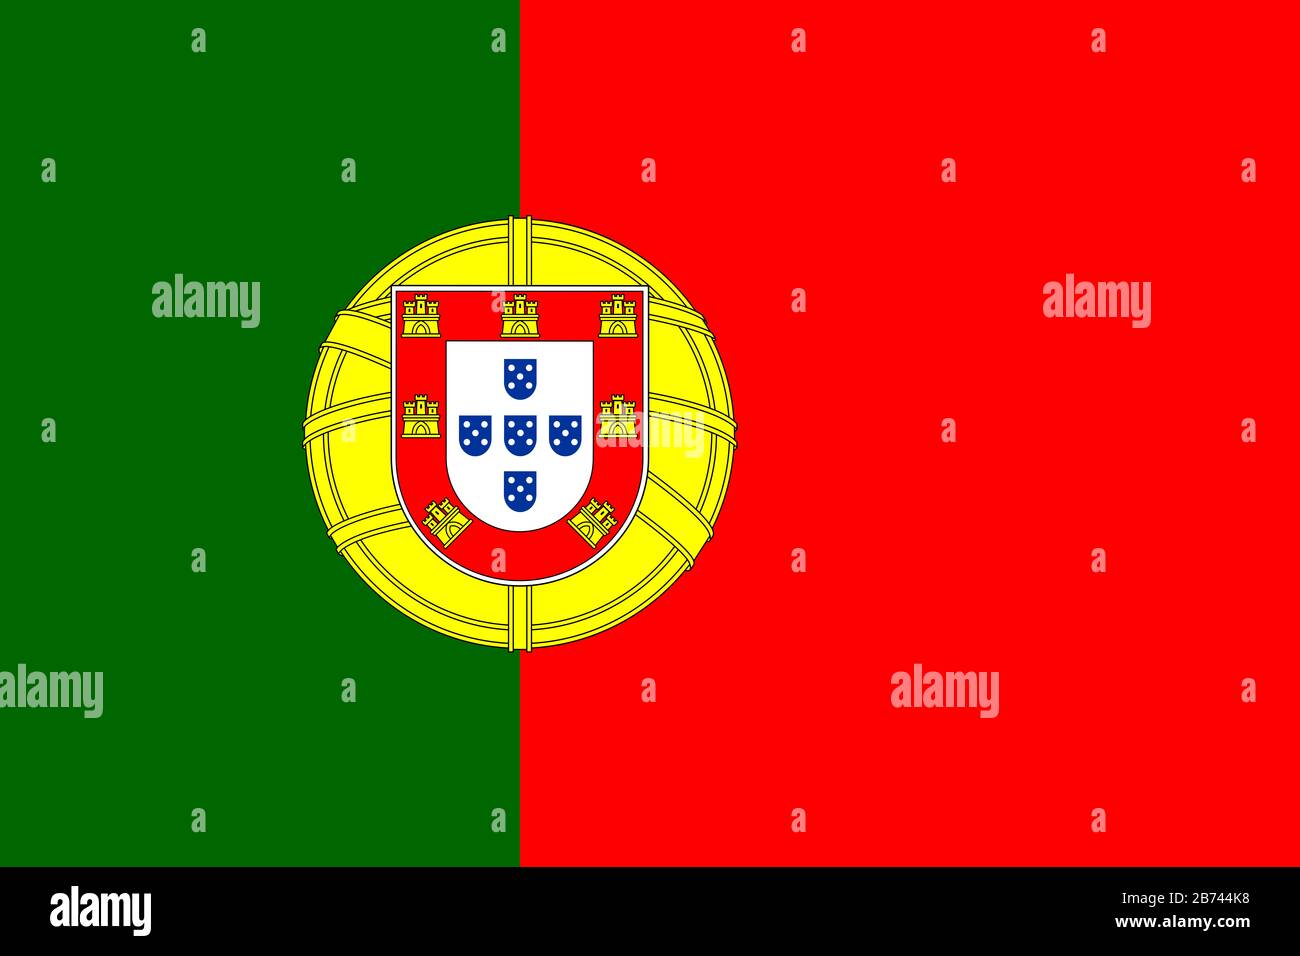 Bandiera del Portogallo - rapporto standard bandiera portoghese - modalità colore RGB reale Foto Stock